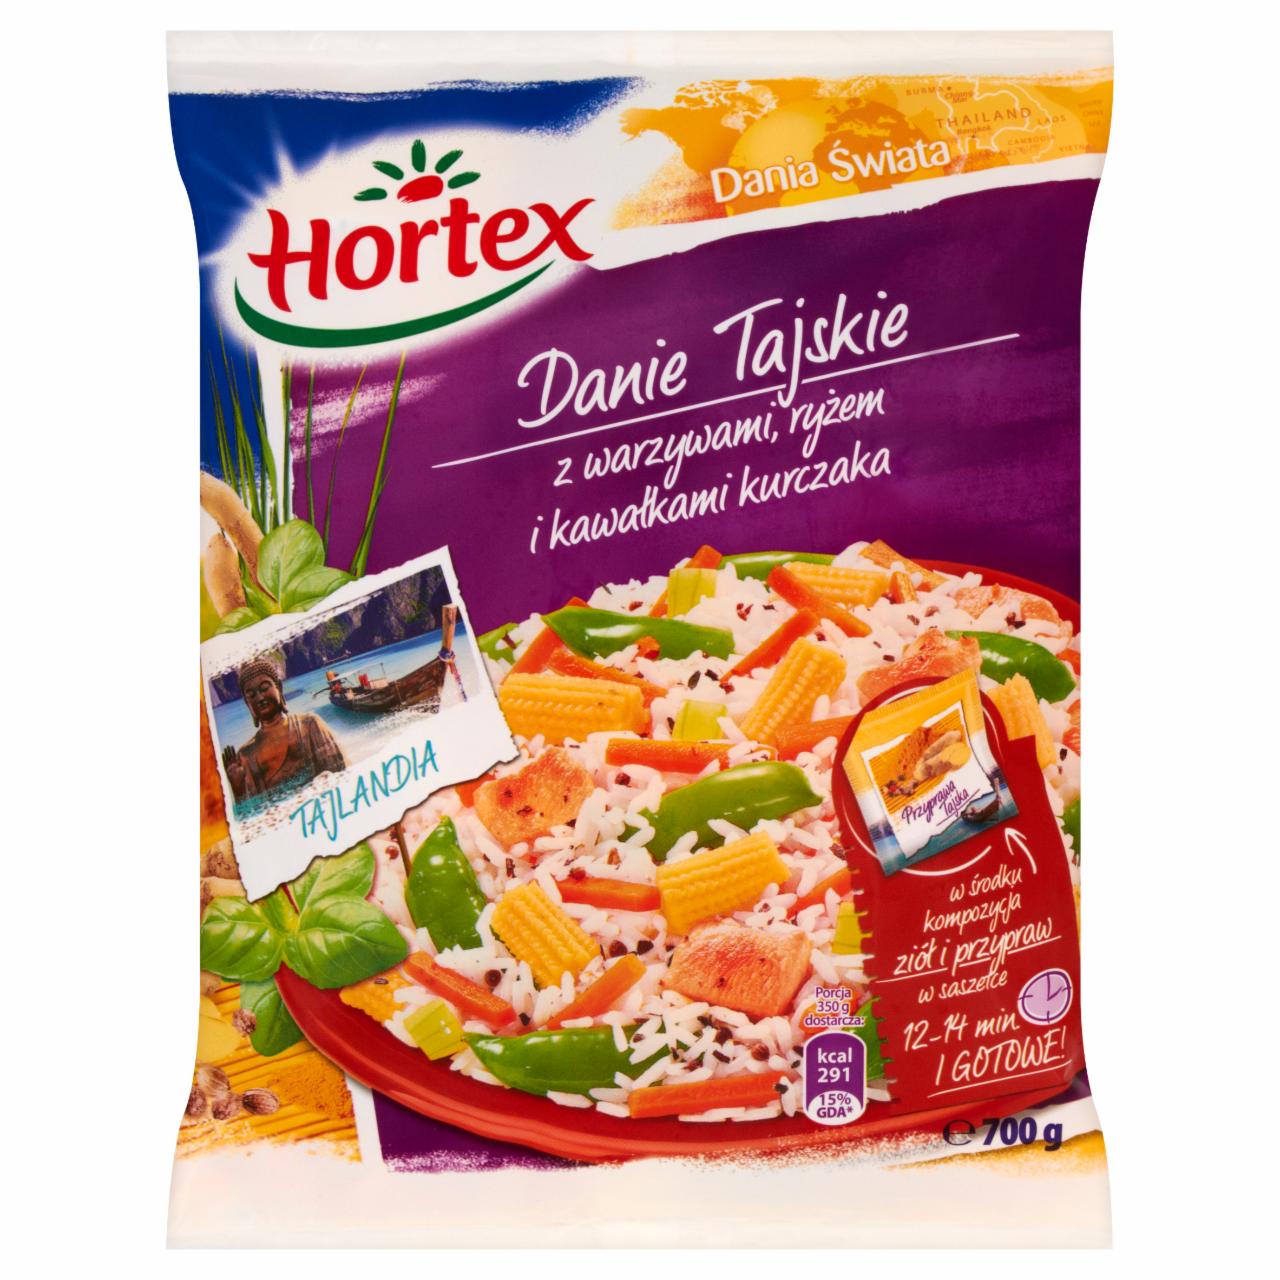 Zdjęcia - Hortex Dania Świata Danie Tajskie z warzywami ryżem i kawałkami kurczaka 700 g